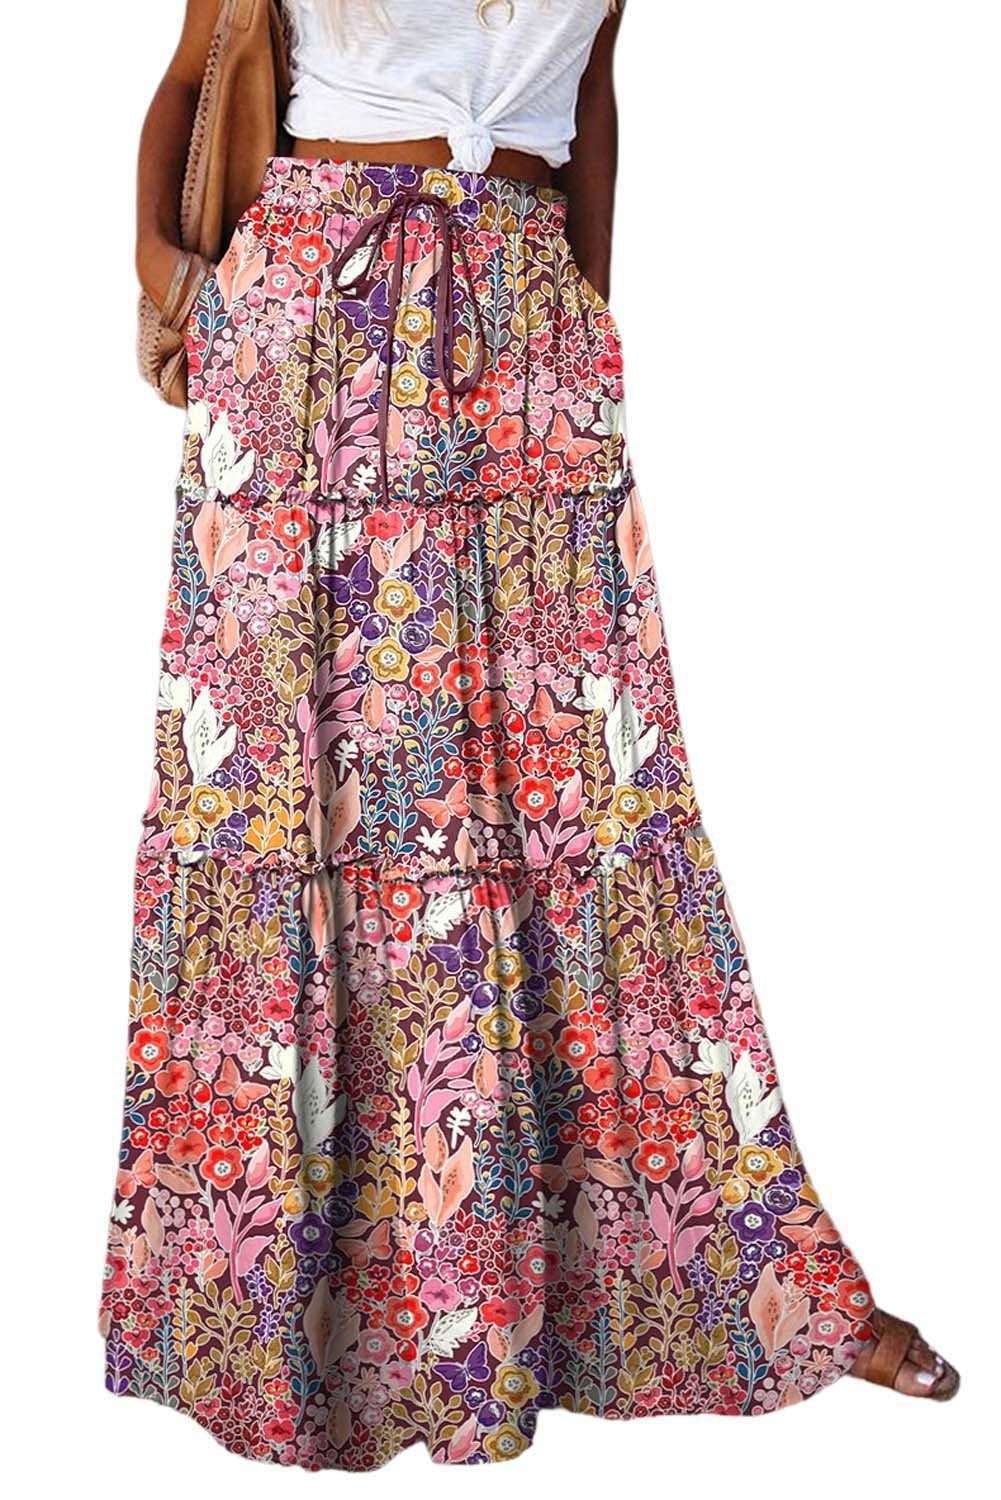 Юбка-майка 2-в-1, женская длинная женская длинная юбка в стиле бохо с цветочным принтом, высокой эластичной резинкой на талии и карманами